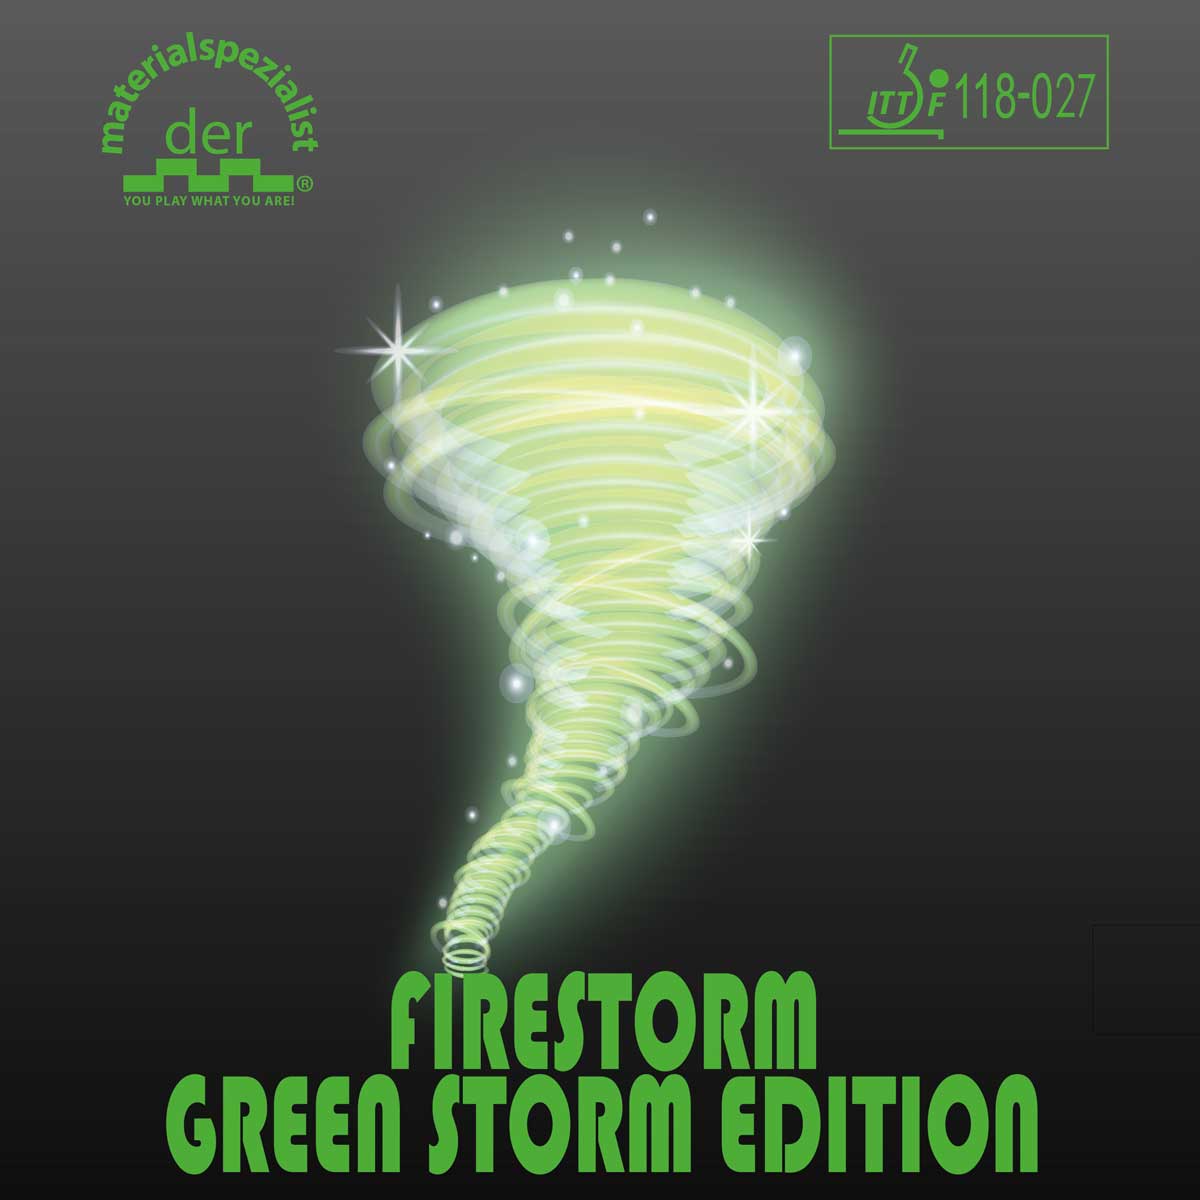 der materialspezialist Belag Firestorm Green Storm